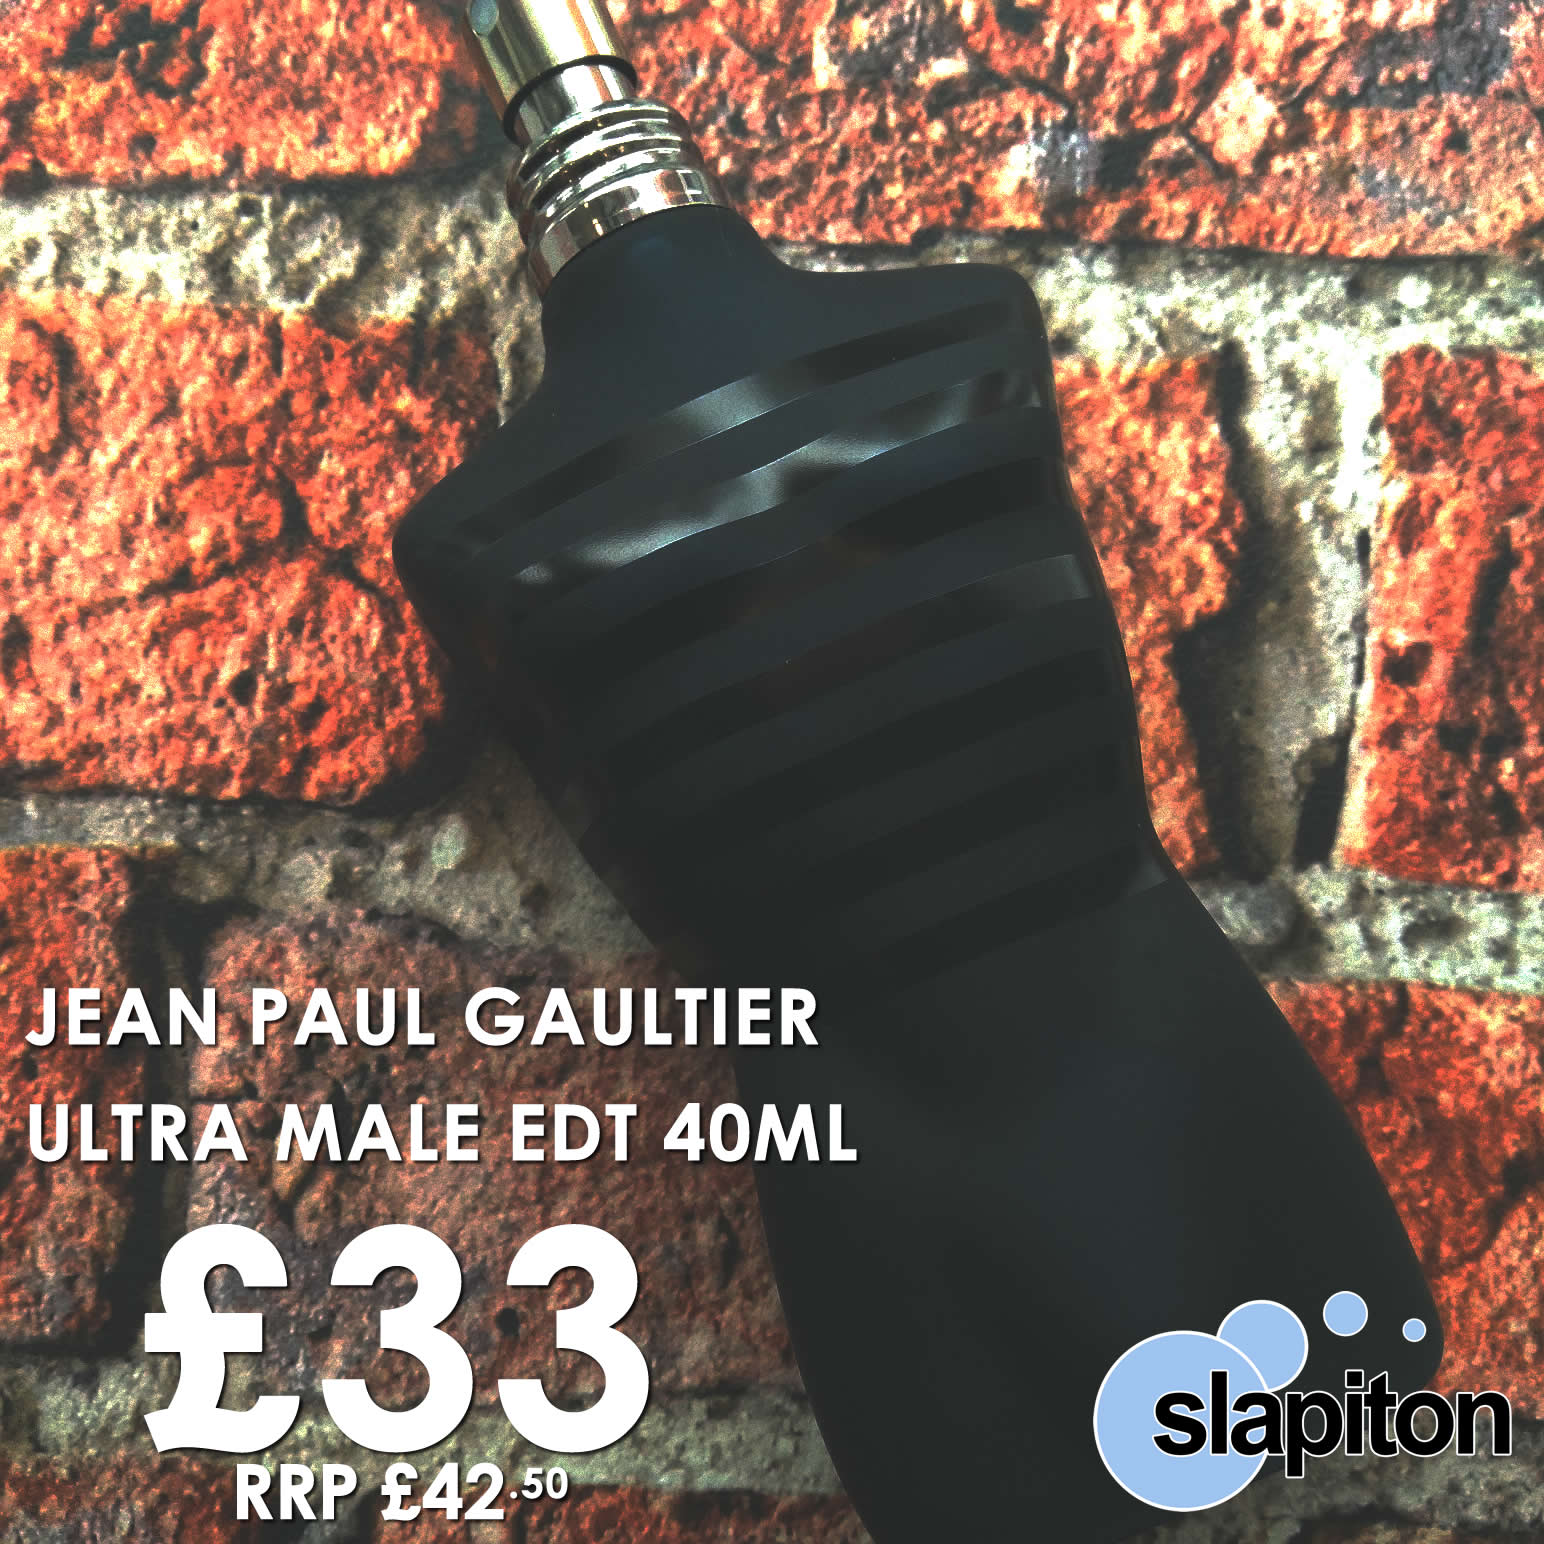 Jean Paul Gaultier Ultra Male - Fantastic Offer